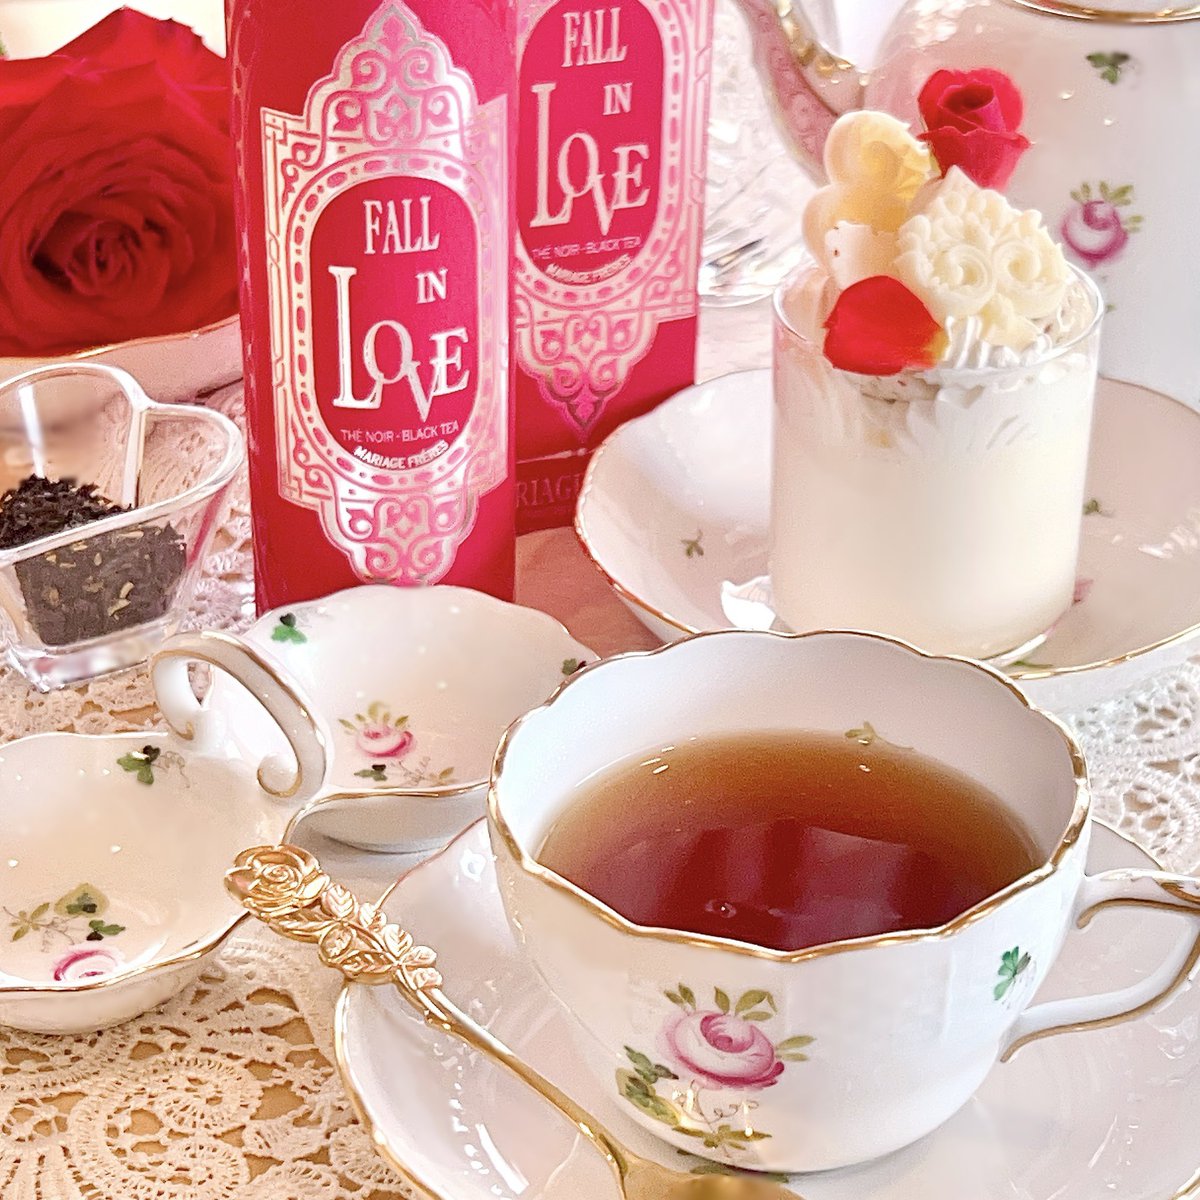 マリアージュフレール の新作の薔薇とクレームブリュレの紅茶すごい〜🌹🫖
お砂糖はいってないのに甘い…甘く感じるとかじゃなくて甘い。薔薇がめちゃくちゃやわらかくて華やか。ミルクティー好きな方もストレート好きな方も。 